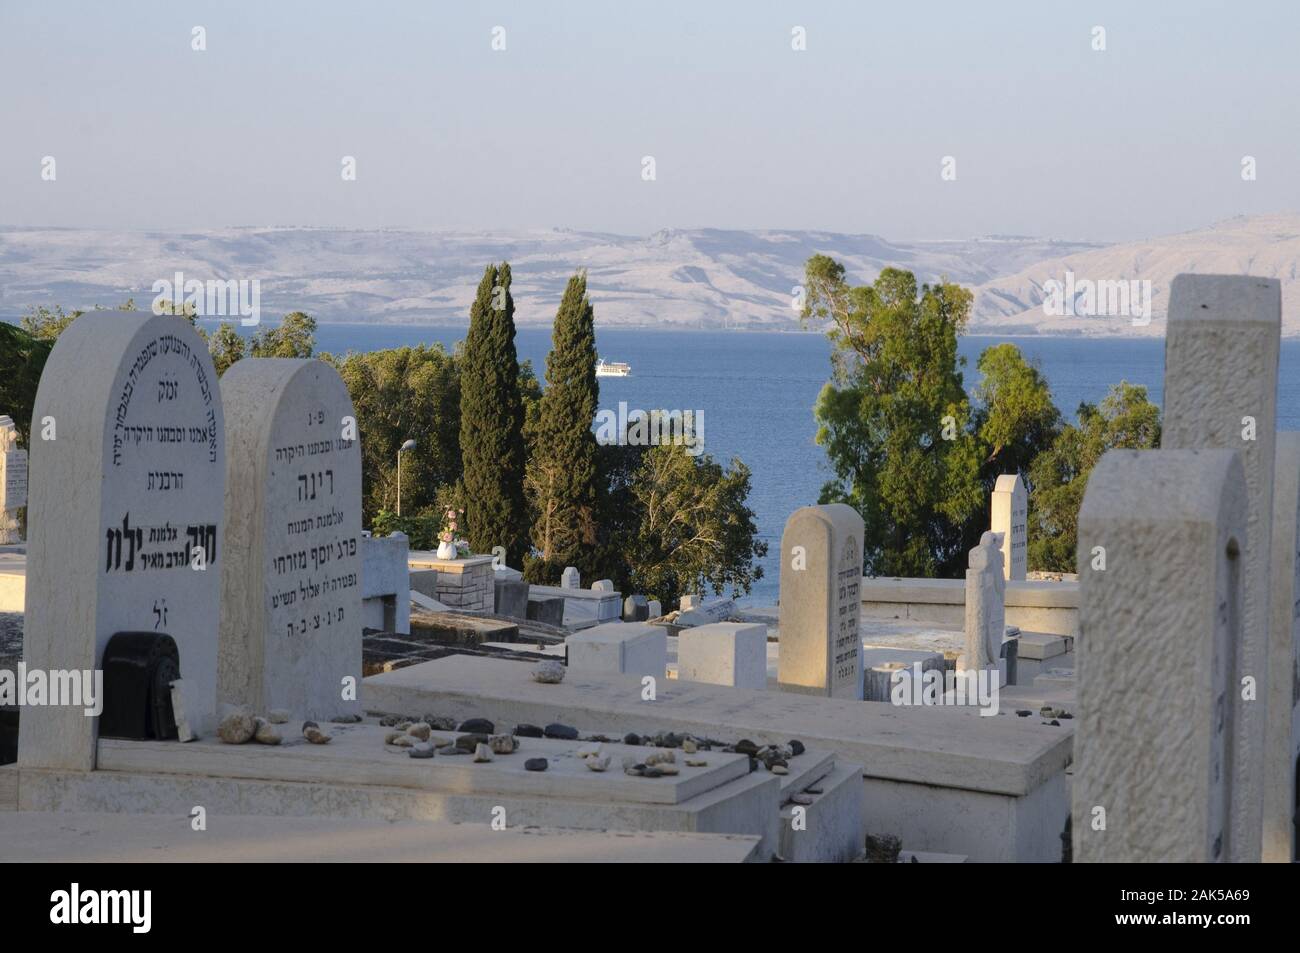 Juedischer Friedhof am See Genezareth, Israel | usage worldwide Stock Photo